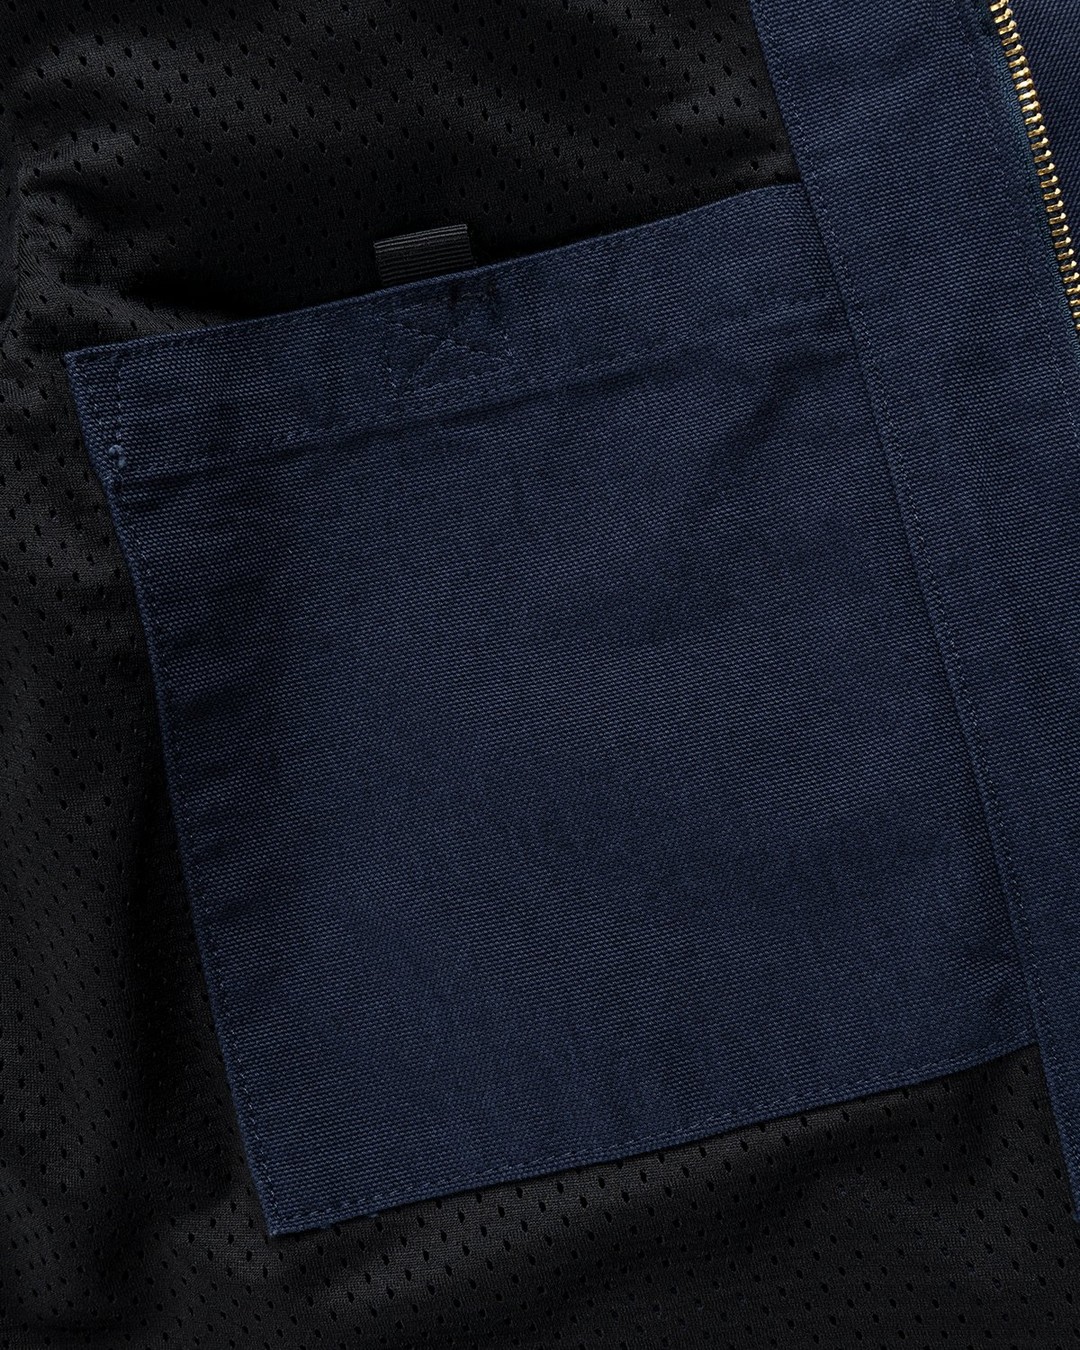 Carhartt WIP denim jacket men's navy blue color